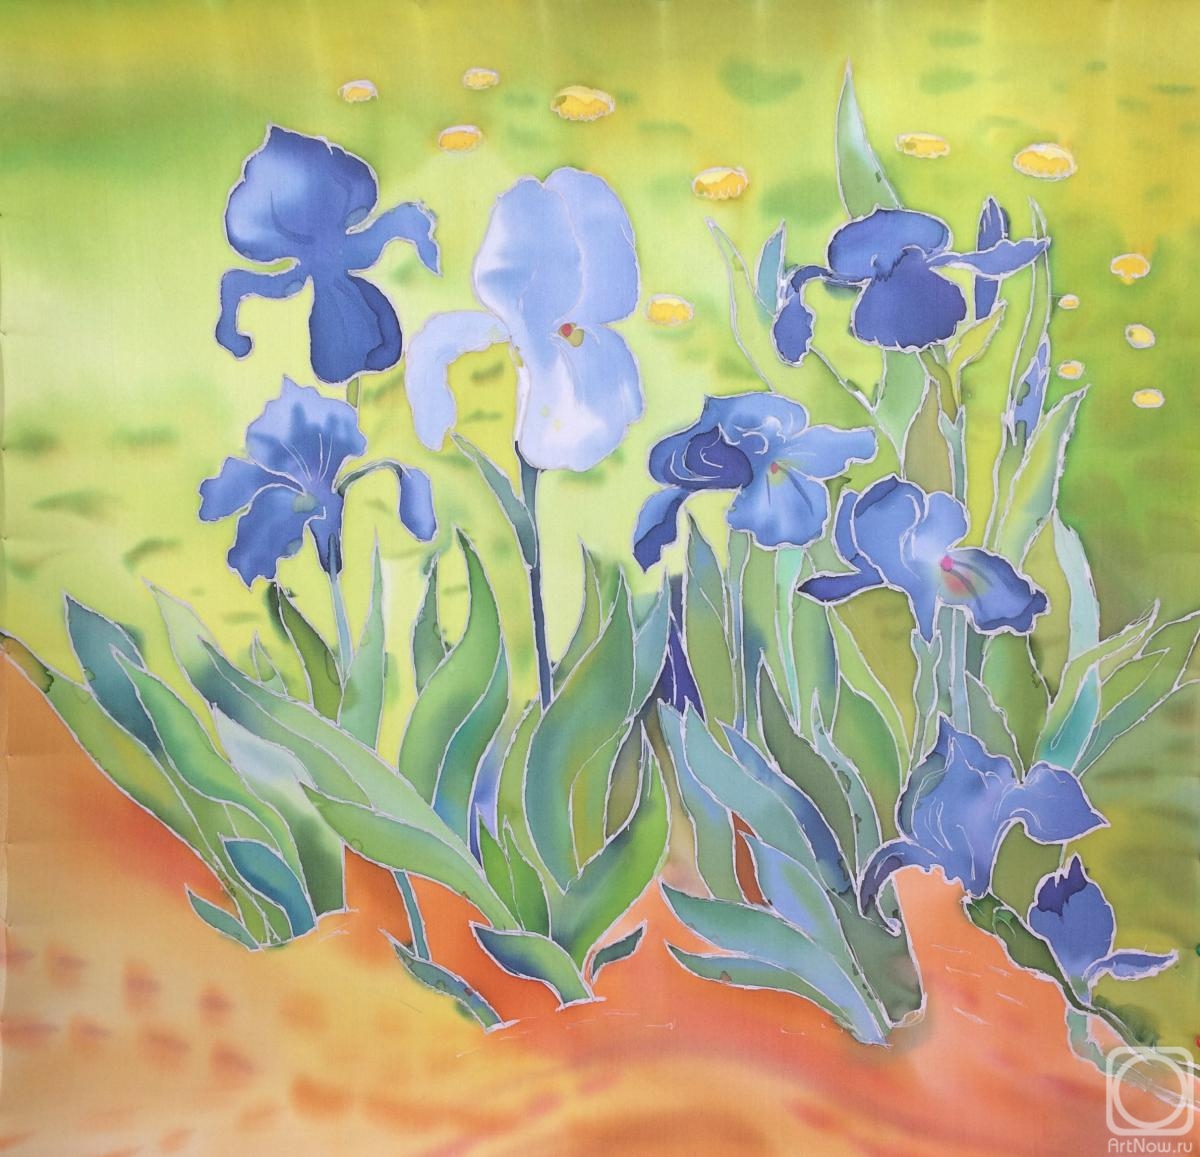 Tsebenko Natalia. Irises. Based on van Gogh